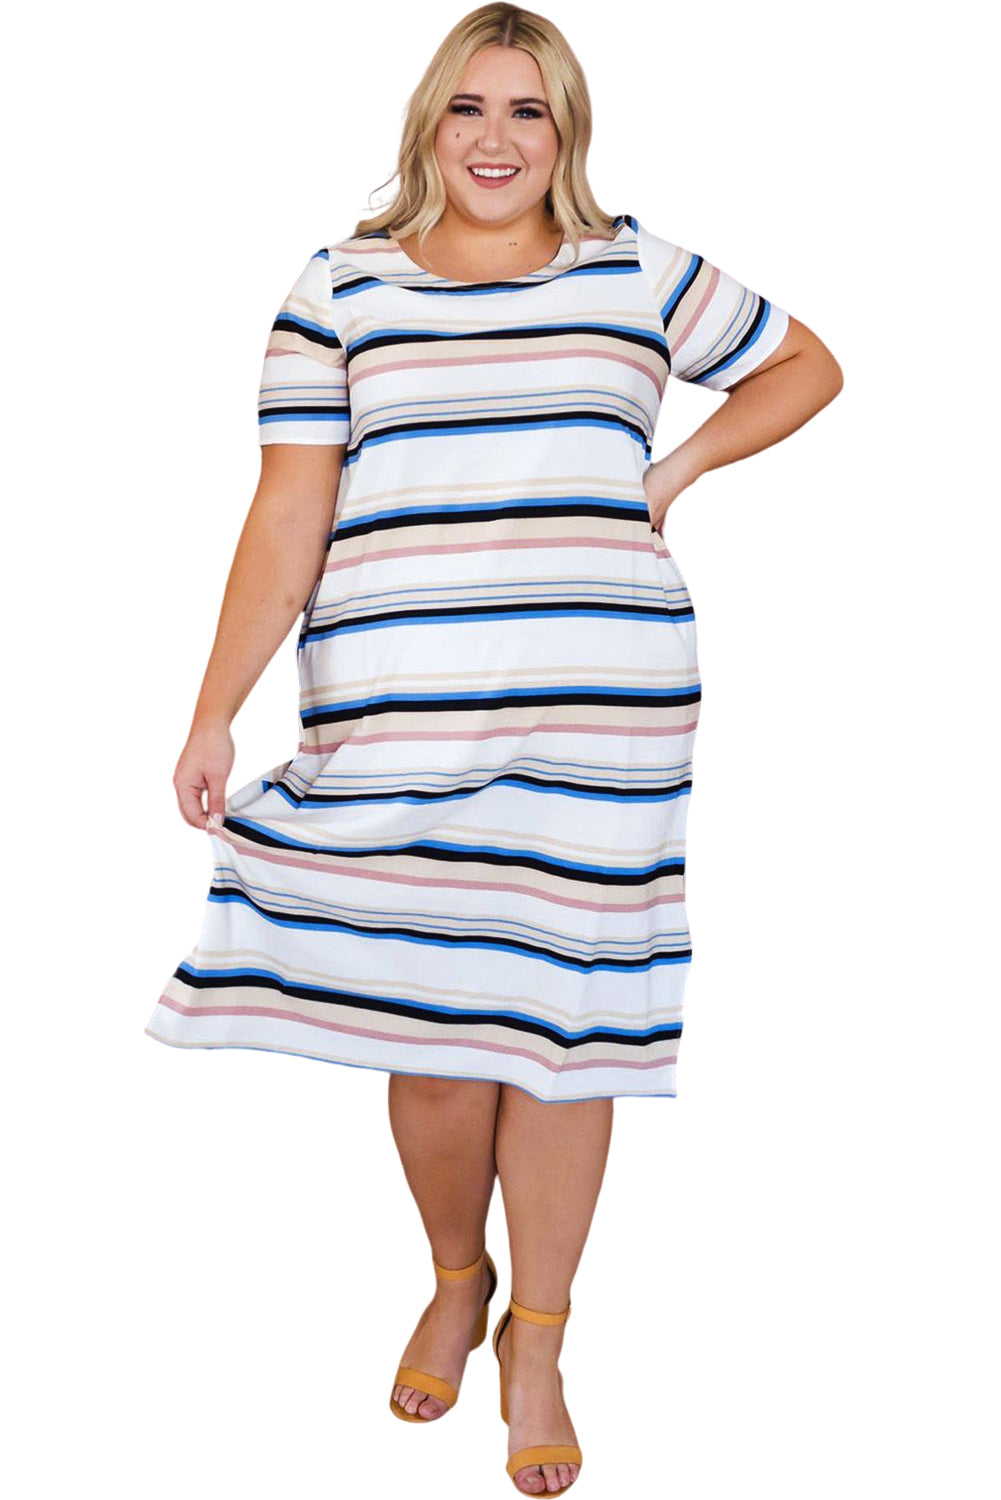 Striped Print Splits Short Sleeve Plus Size Midi Dress Plus Size Dresses JT's Designer Fashion